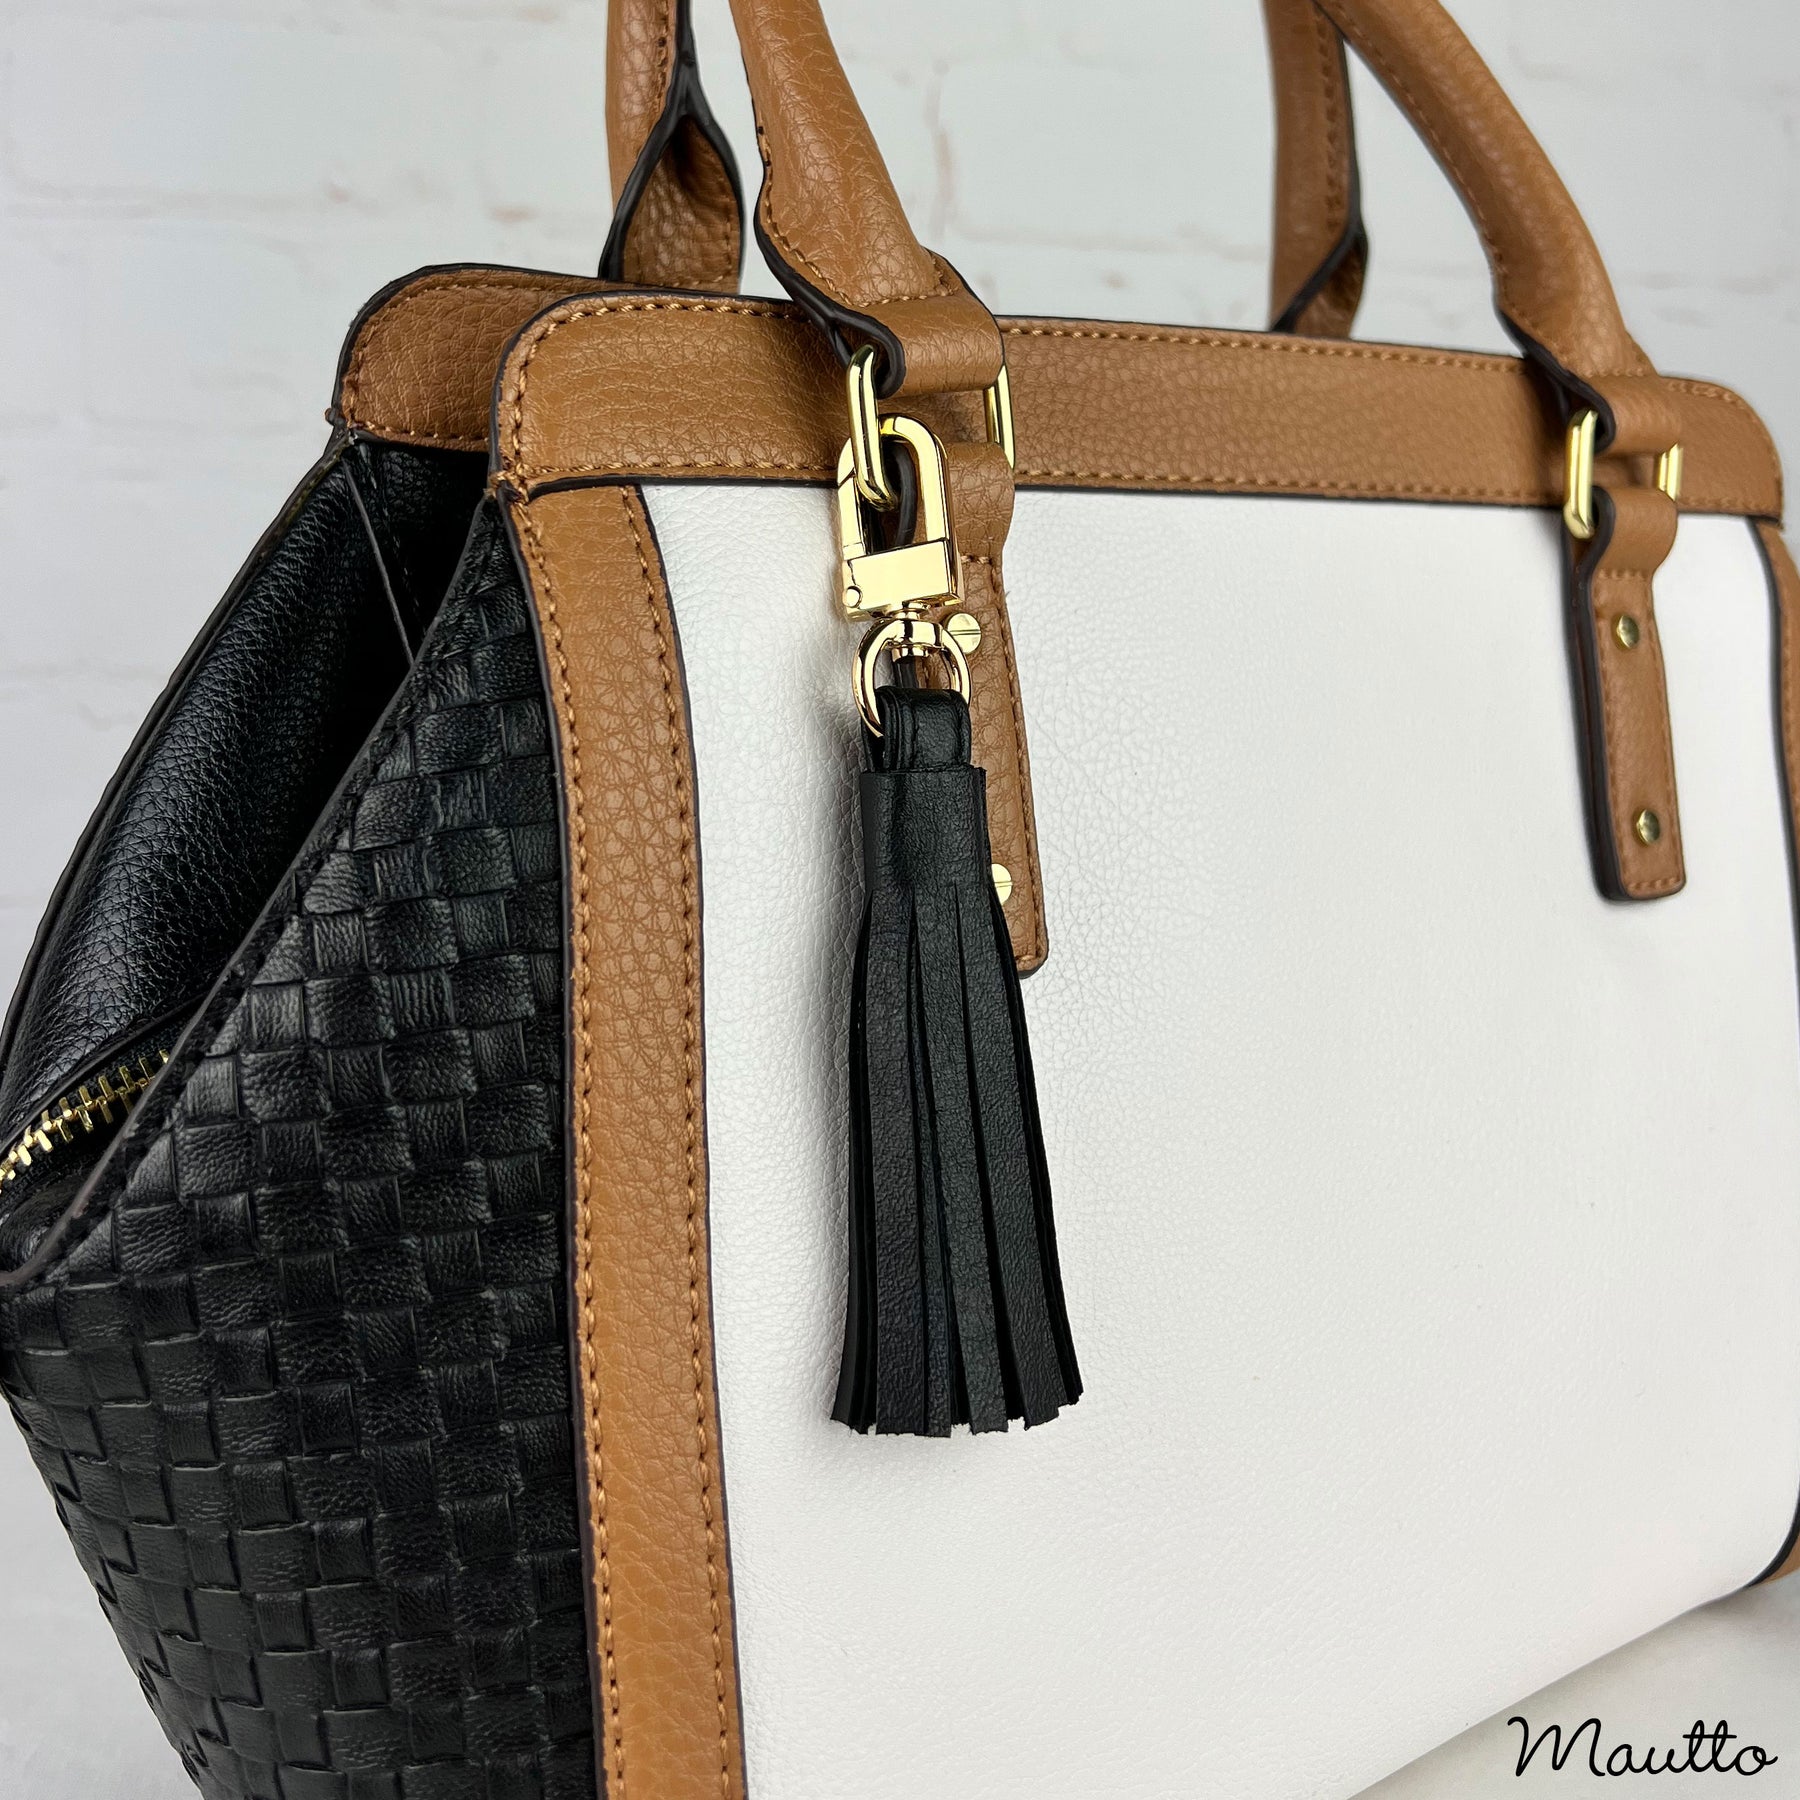 leather tassel handbag accessory swivel clip attachment